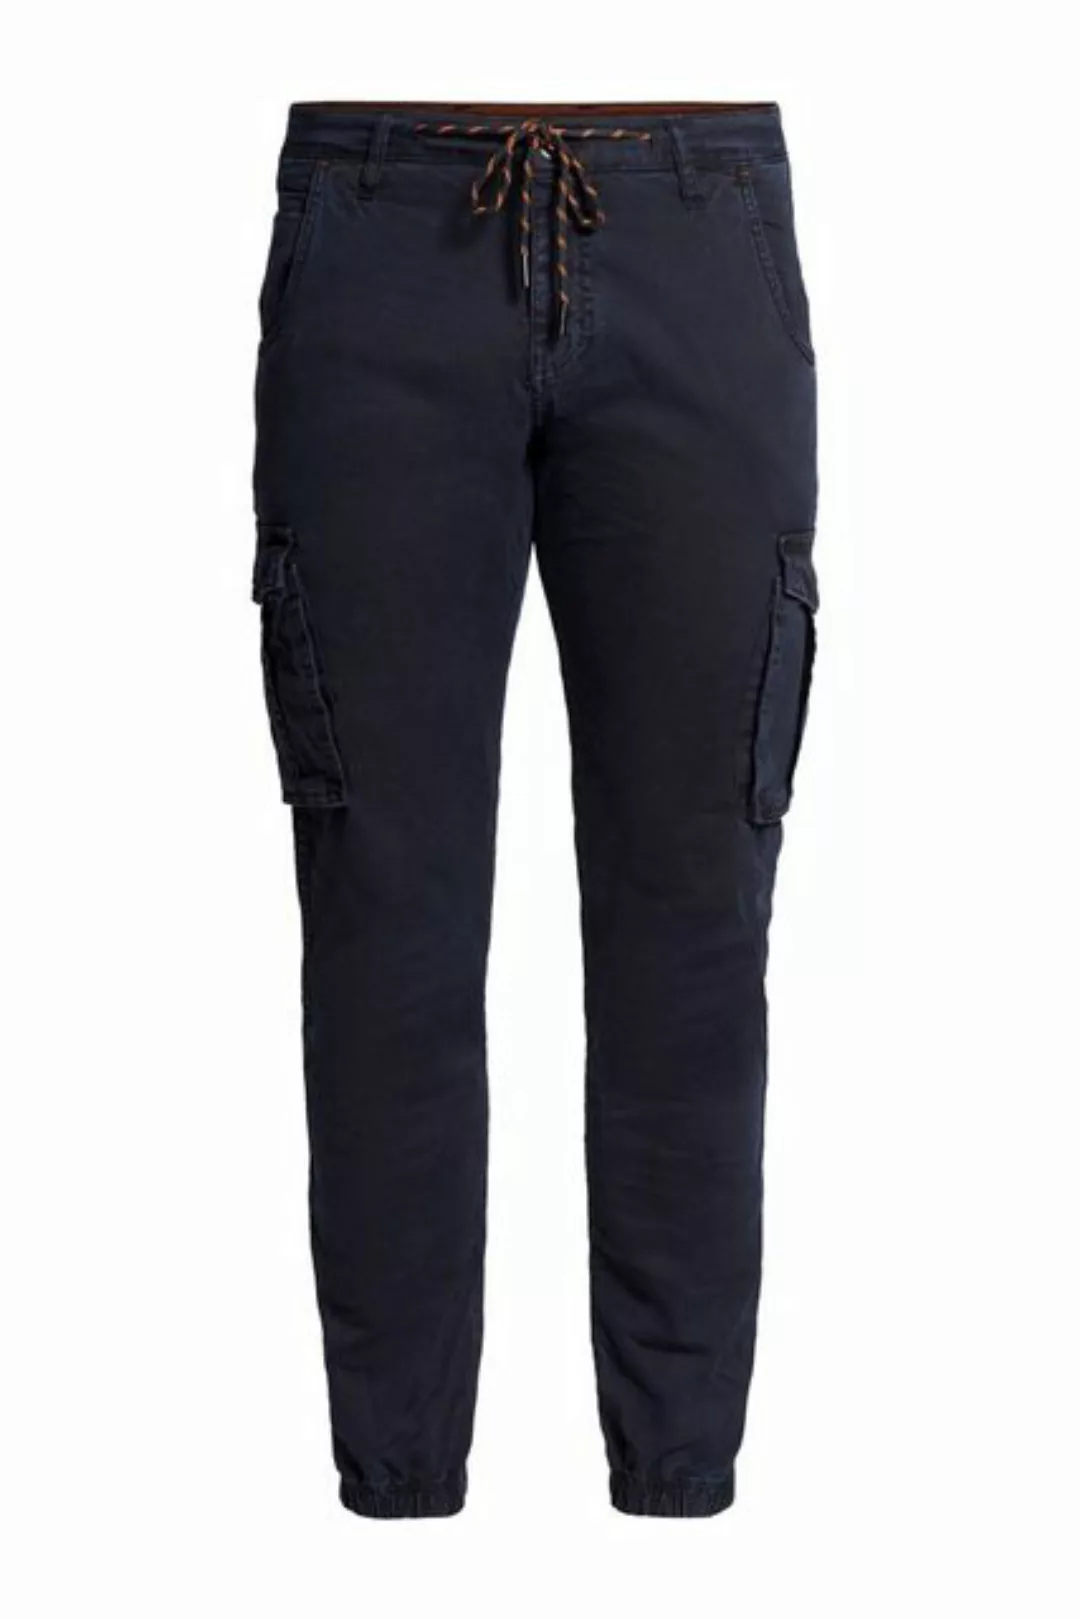 Zhrill 5-Pocket-Jeans Cargohose MICHA Black angenehmer Tragekomfort günstig online kaufen